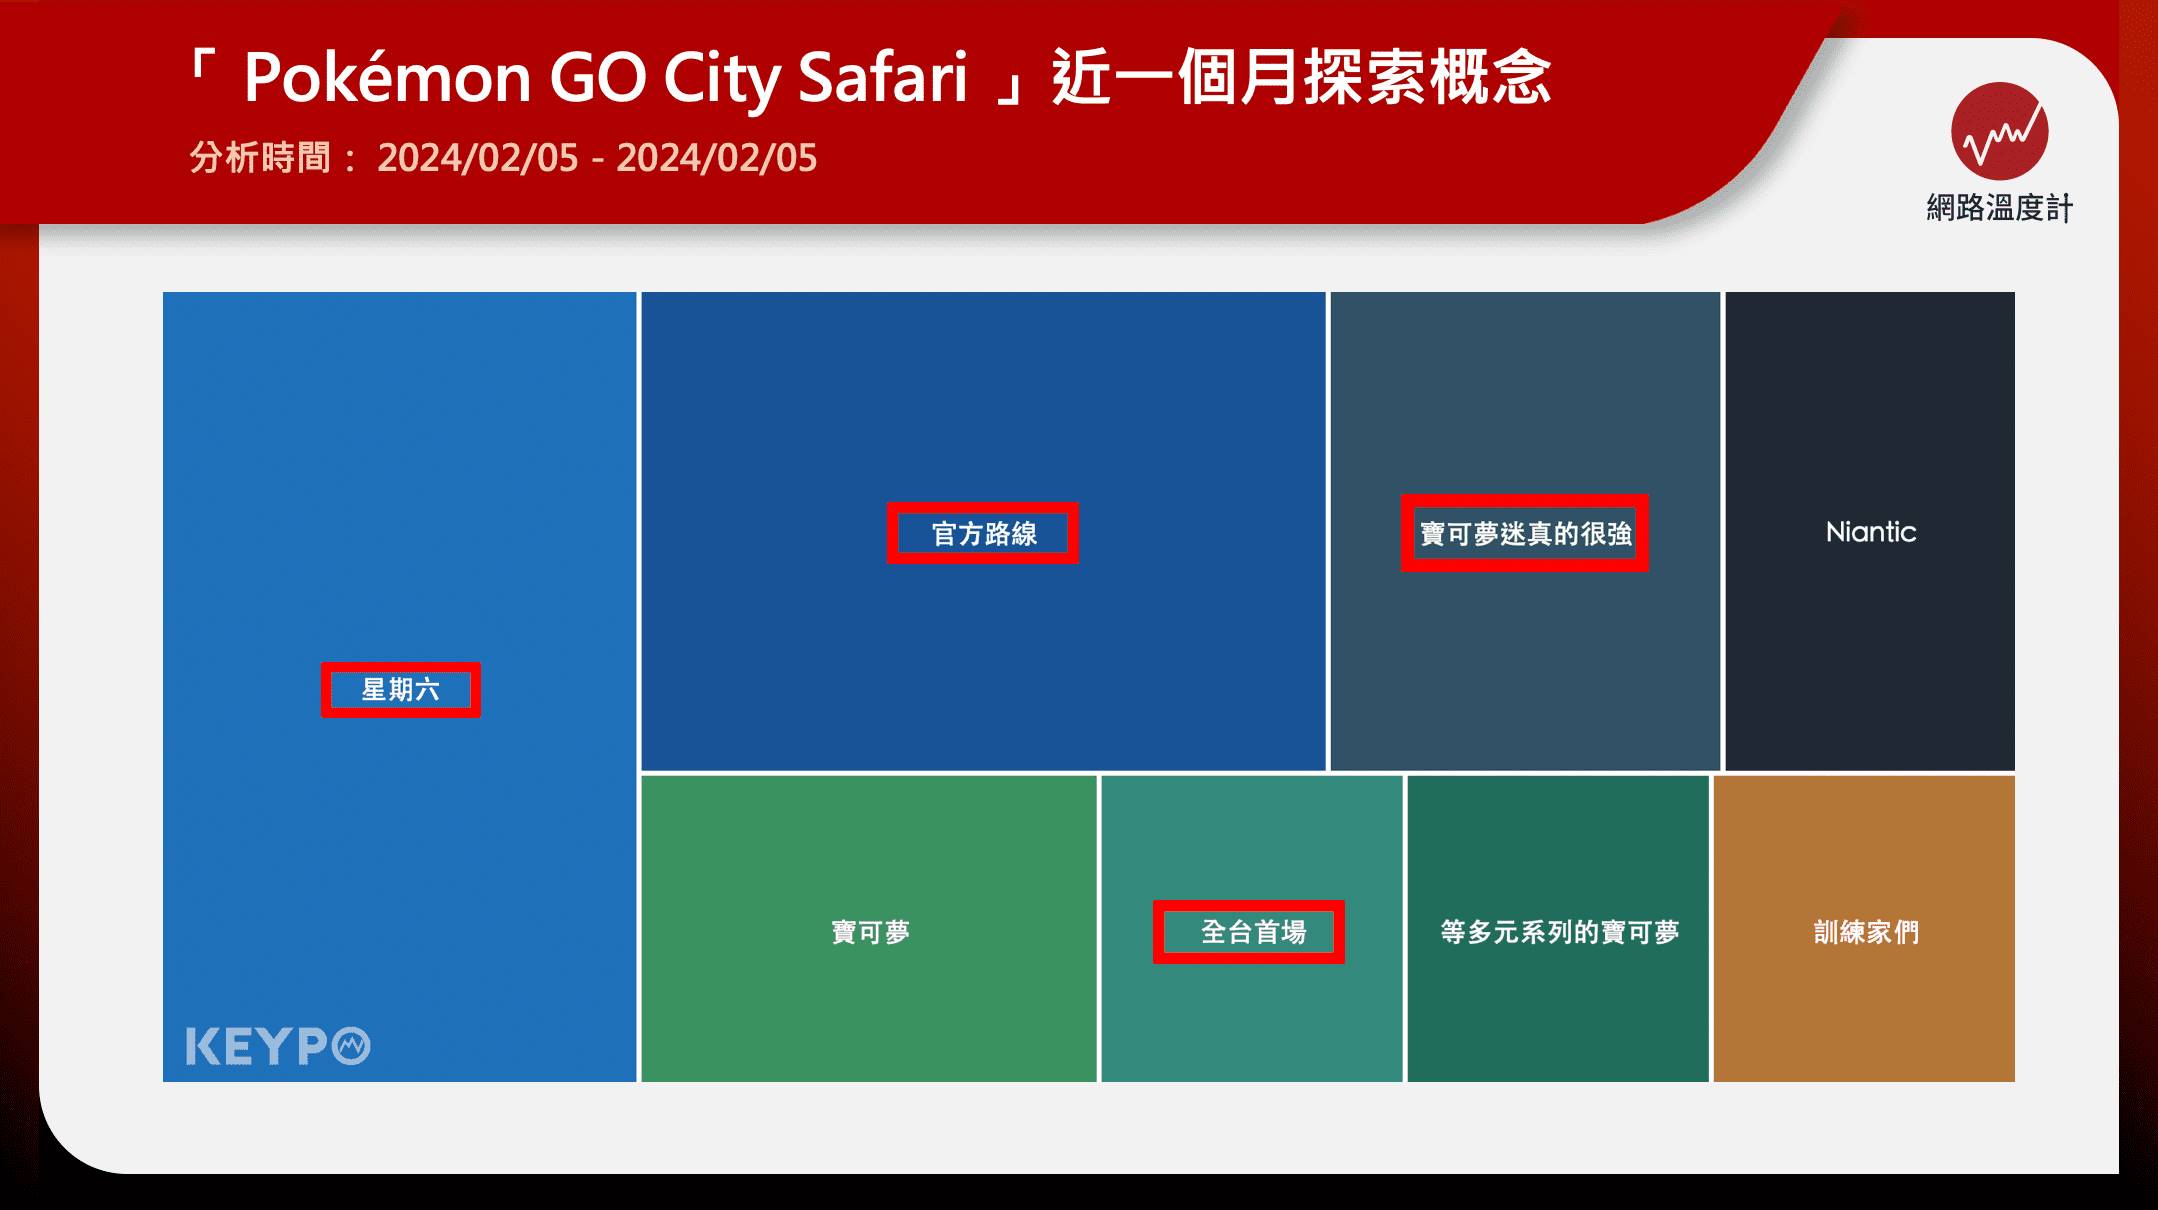 台灣首場「Pokémon GO City Safari」即將於3月9、10日於台南舉行！該次活動，不僅引起台南的觀光潮，也讓台南的飯店幾乎全滿，讓人感受到寶可夢的魅力！